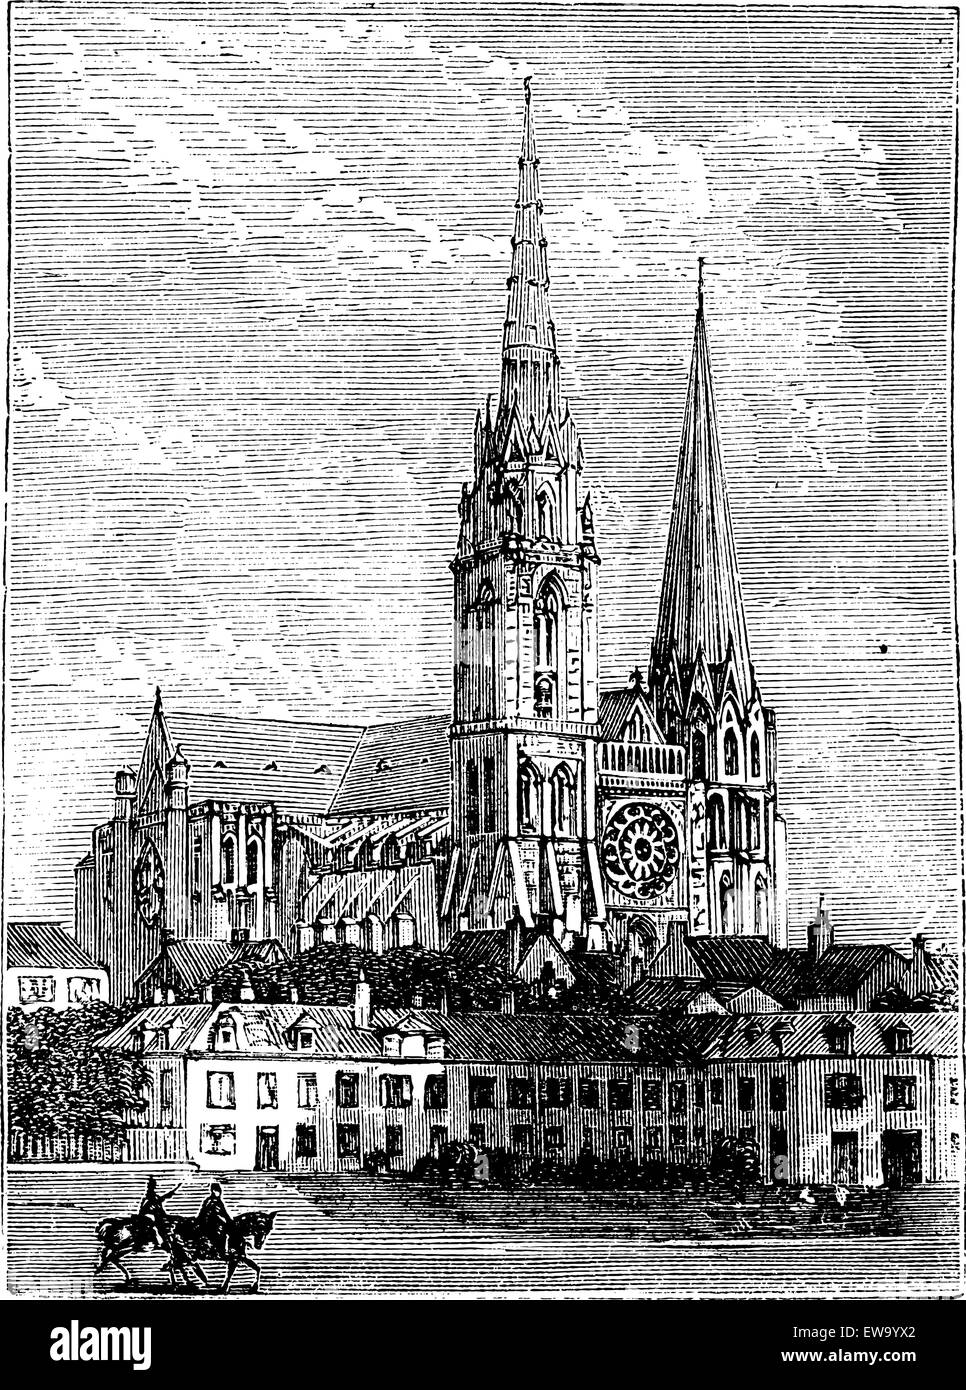 La cathédrale de Chartres, à Chartres, France, pendant les années 1890, gravure d'époque. Vieille illustration gravée de la cathédrale de Chartres. Illustration de Vecteur